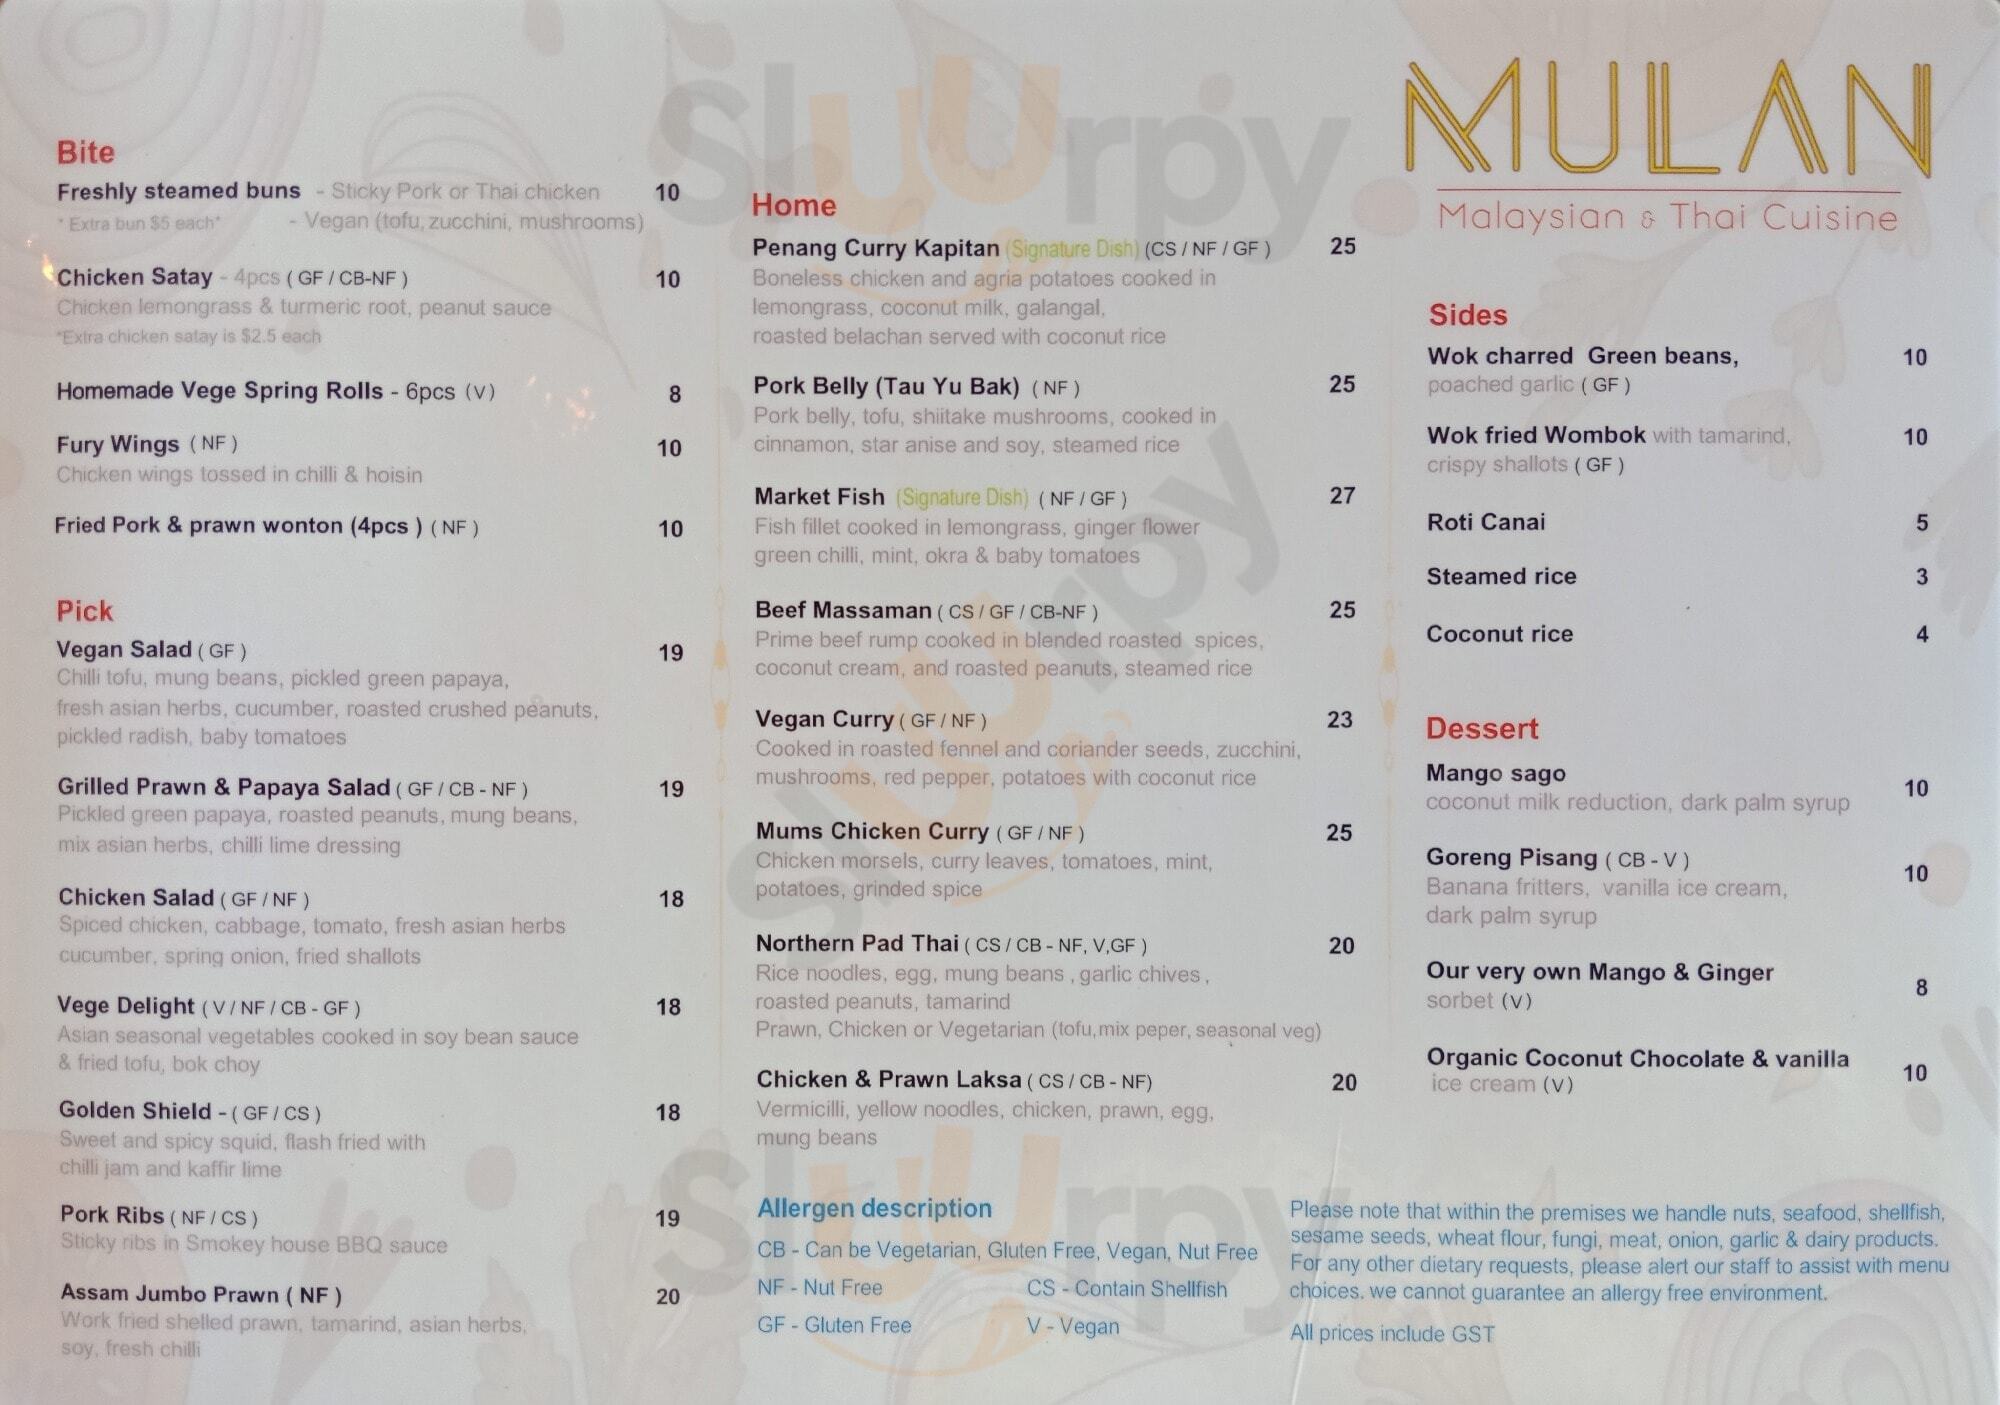 Mulan Malaysian Restaurant Birkenhead Menu - 1